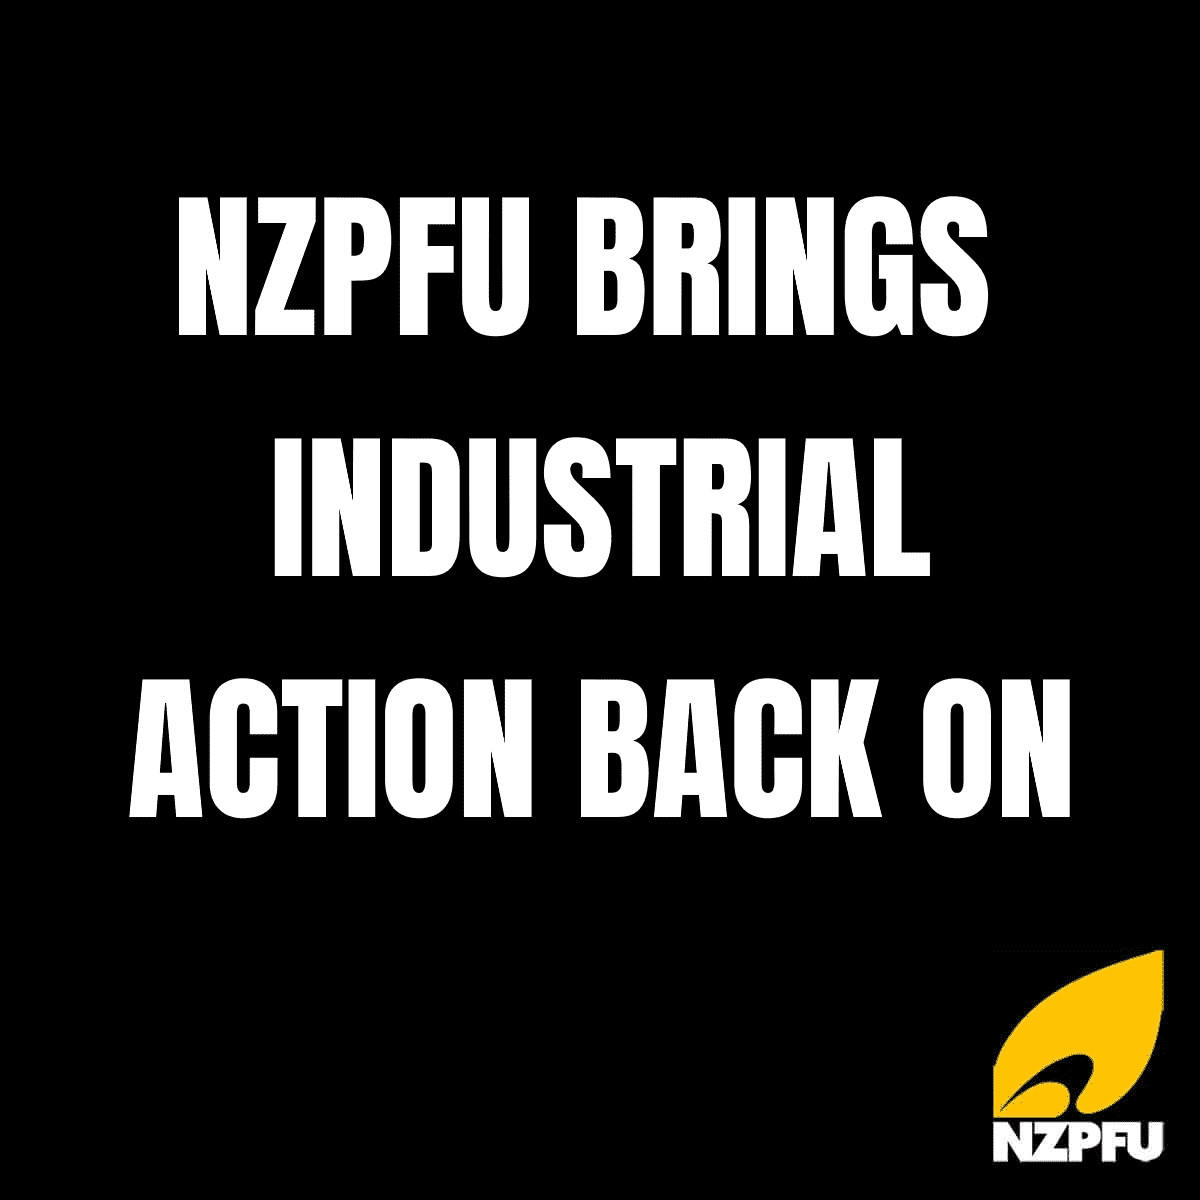 NZPFU BRINGS INDUSTRIAL ACTION BACK ON